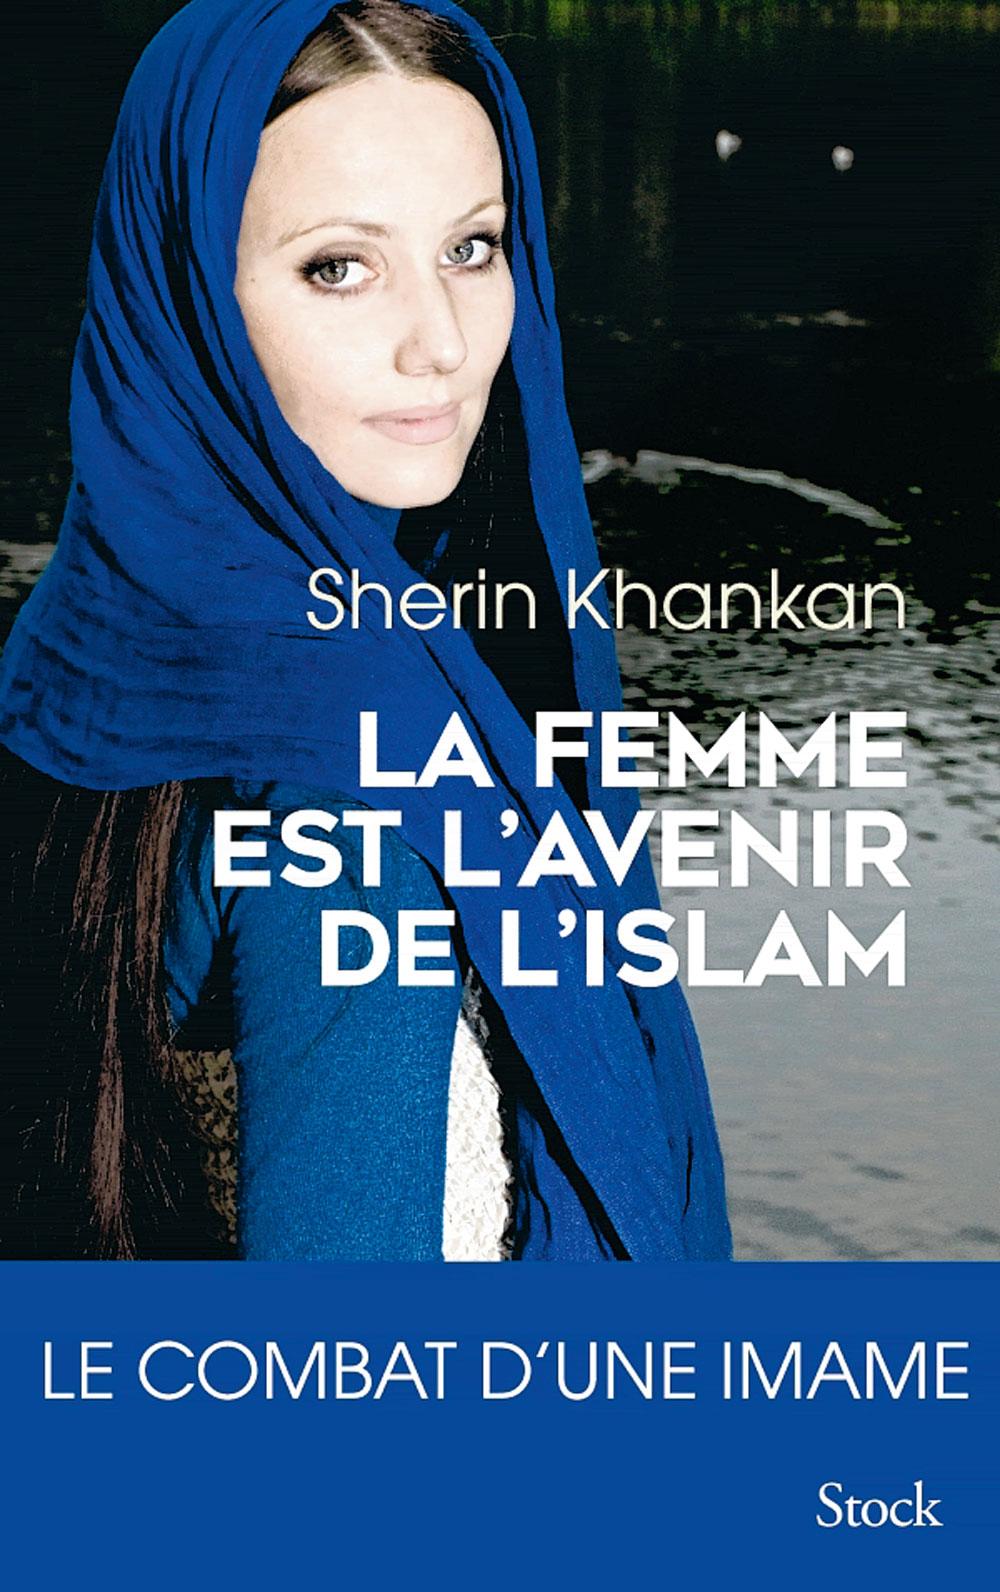 Le salut de l'islam passe par la femme